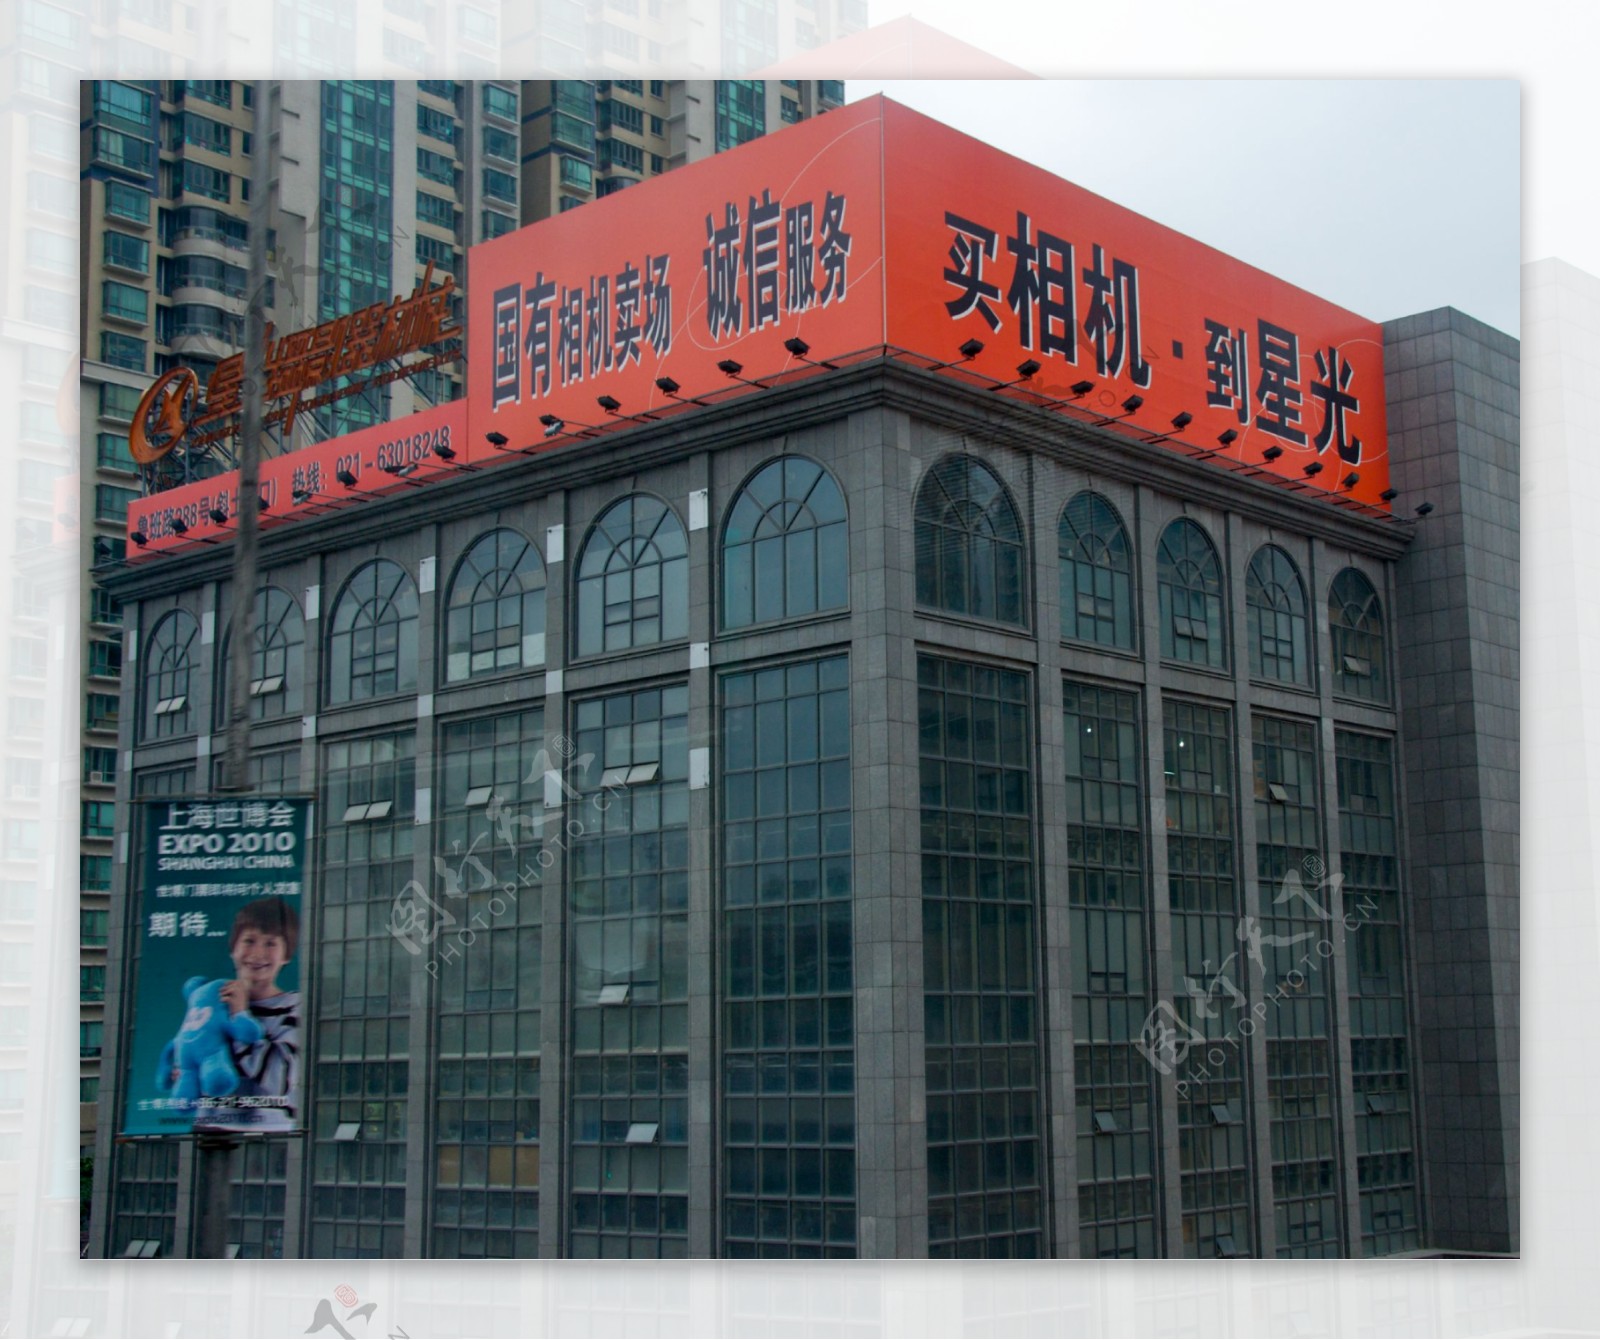 上海鲁班路星光照相器材商店图片